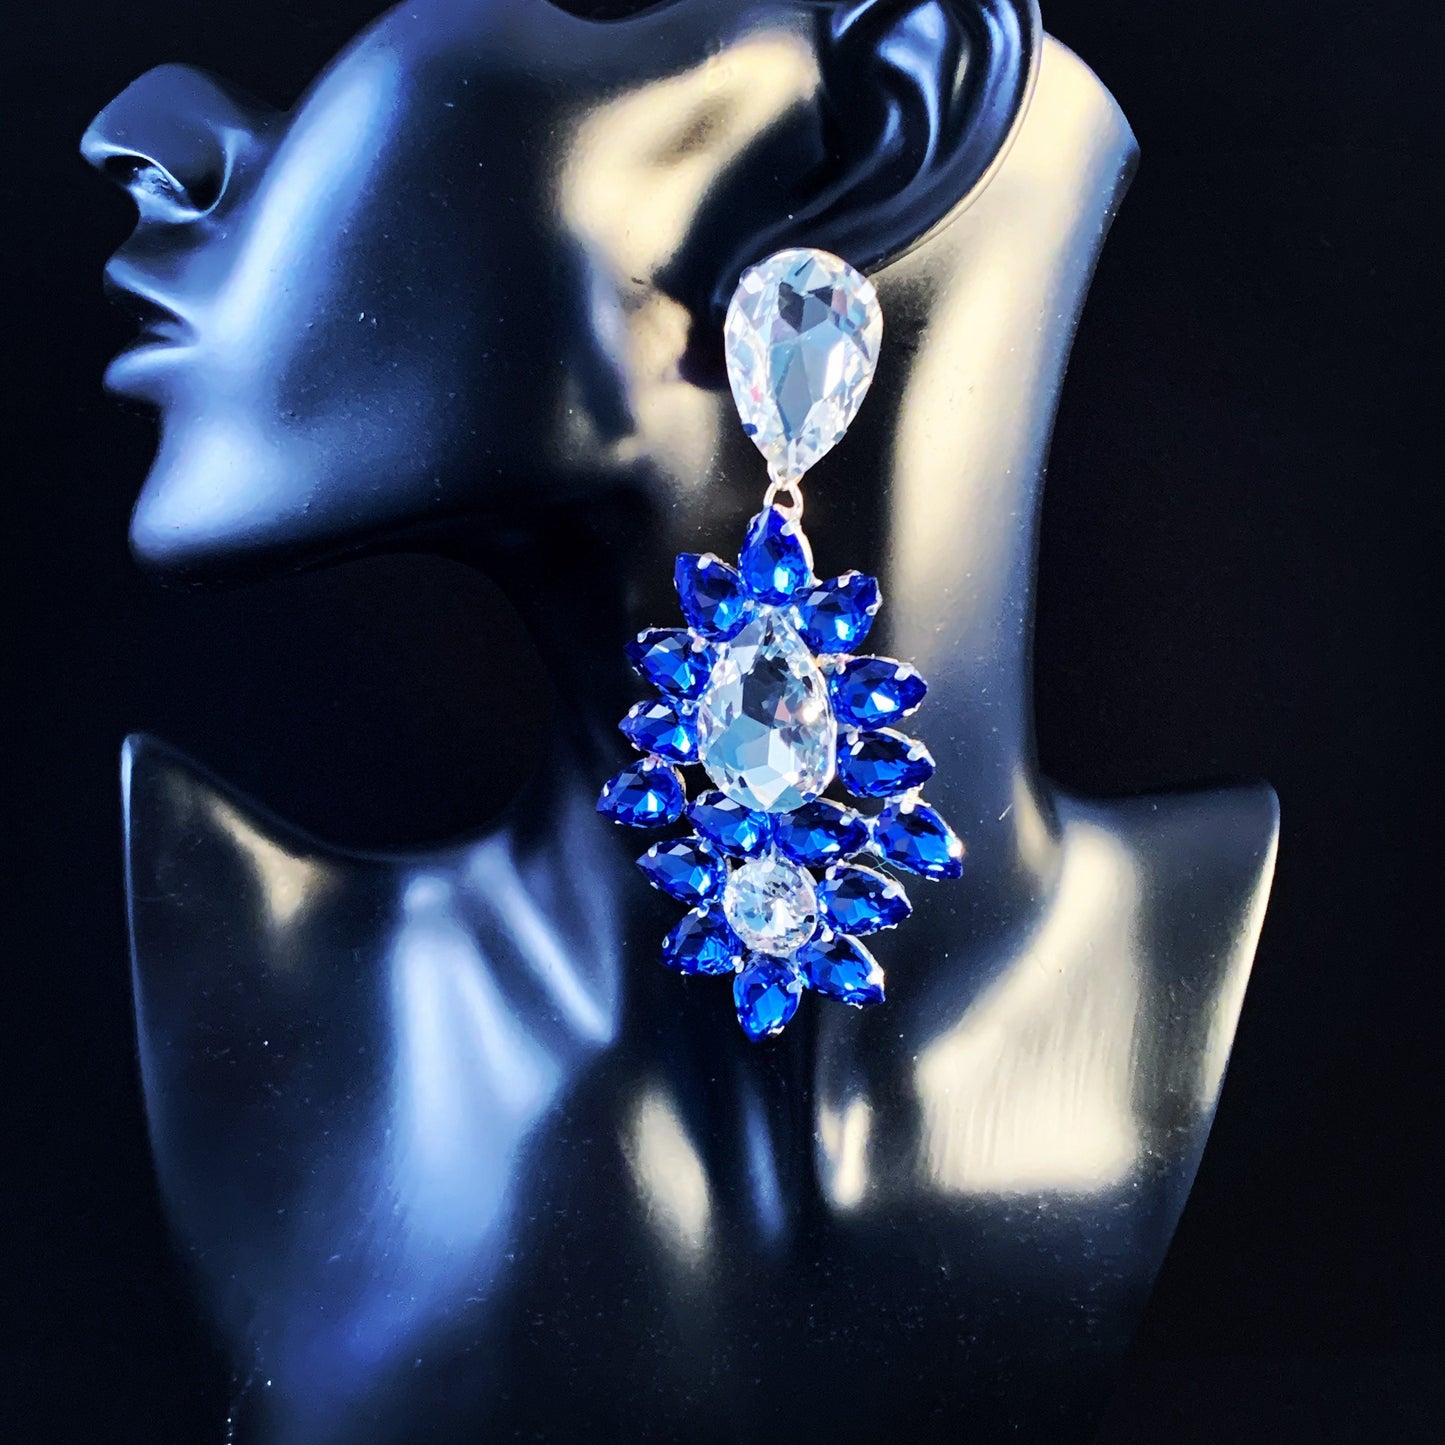 Large Earrings / Clip On or Pierced / Statement Earrings / Crystal Jewelry / Dress Earrings / Drag Queen